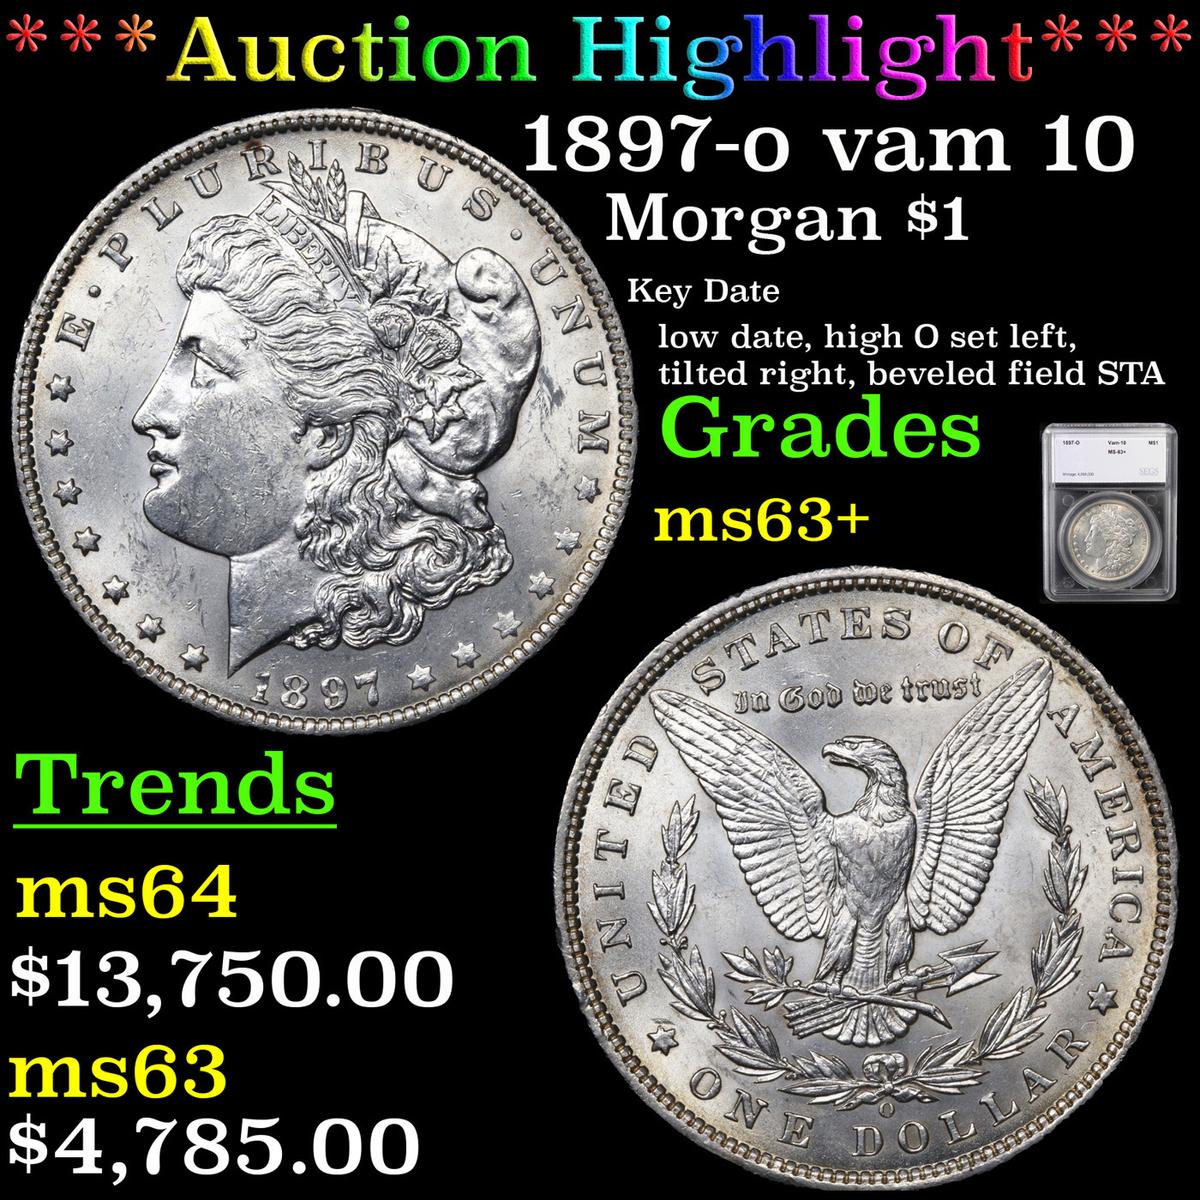 ***Auction Highlight*** 1897-o vam 10  Morgan Dollar $1 Graded ms63+ By SEGS (fc)